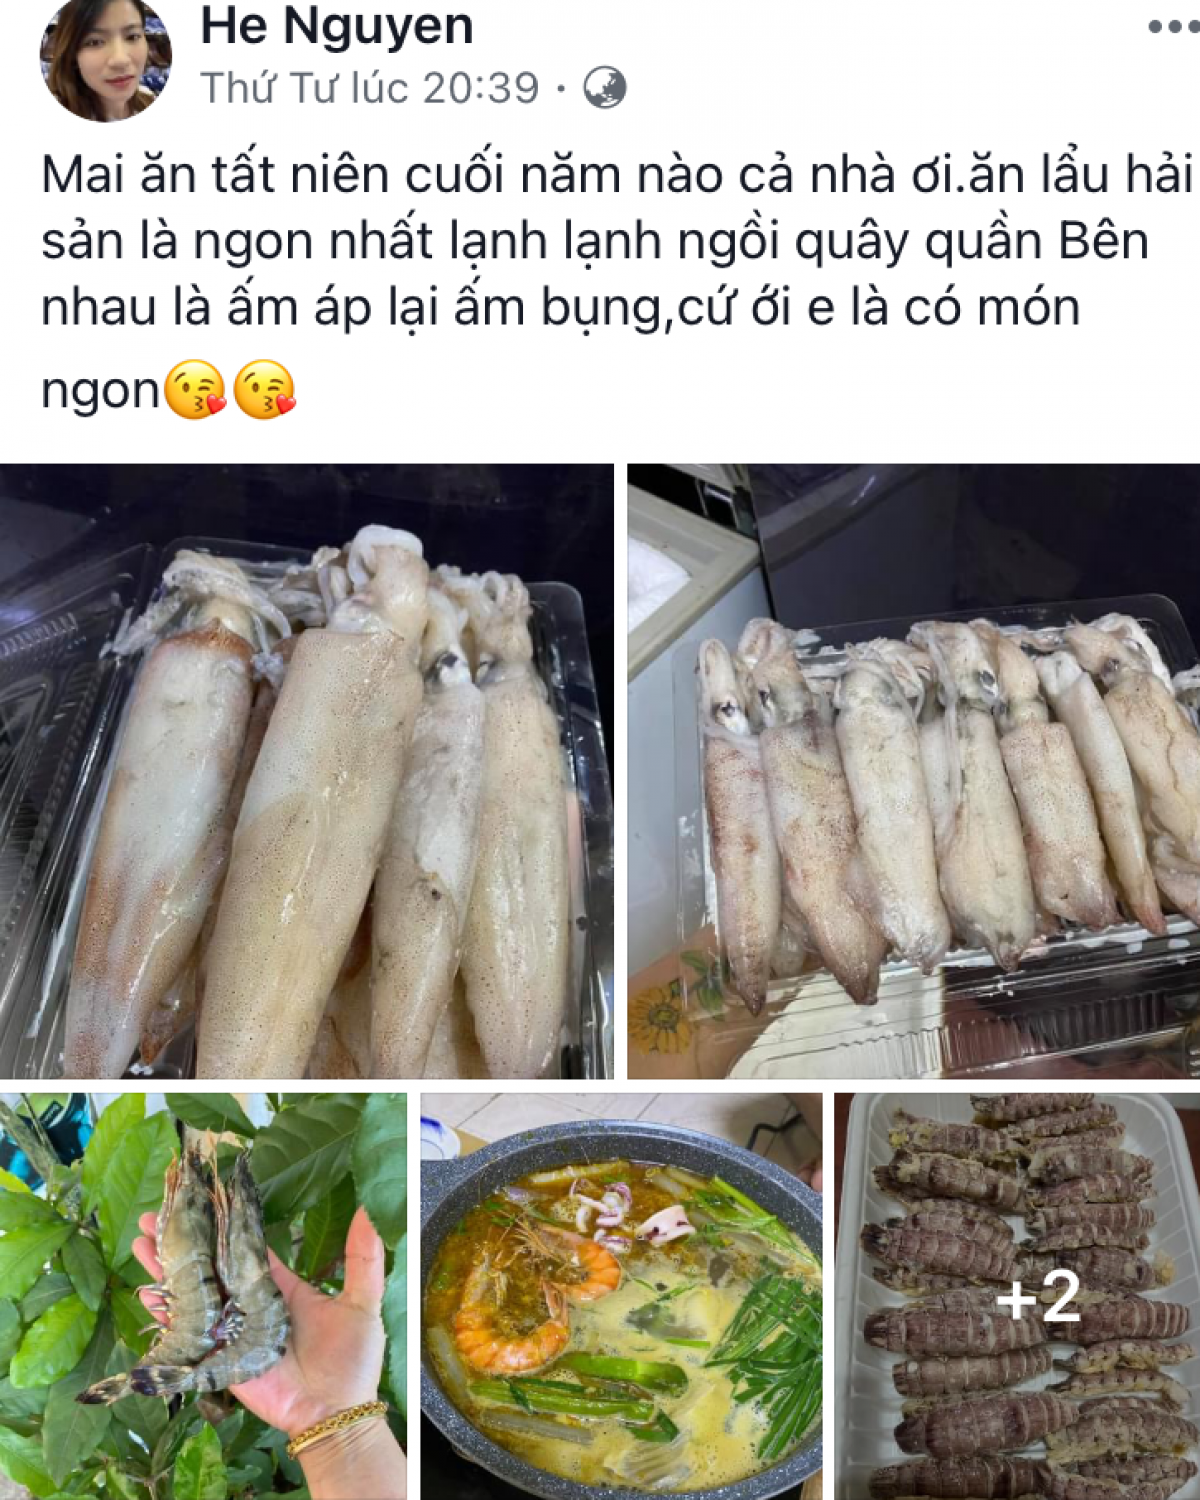 Bán hàng qua Faccebook - một cách để các tiểu thương đưa hải sản Việt sang Lào hiện nay.